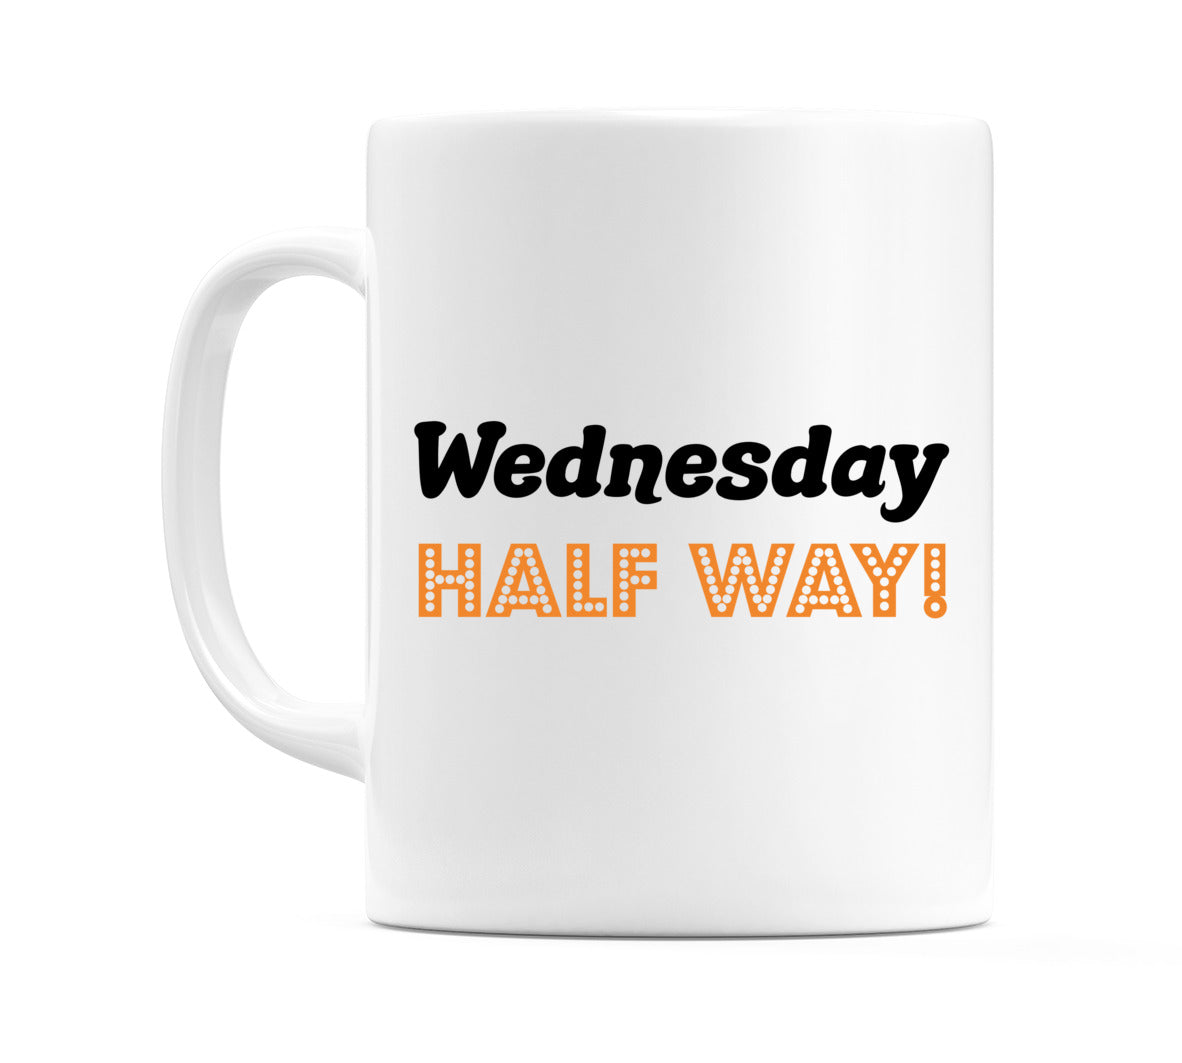 Wednesday - HALF WAY! Mug